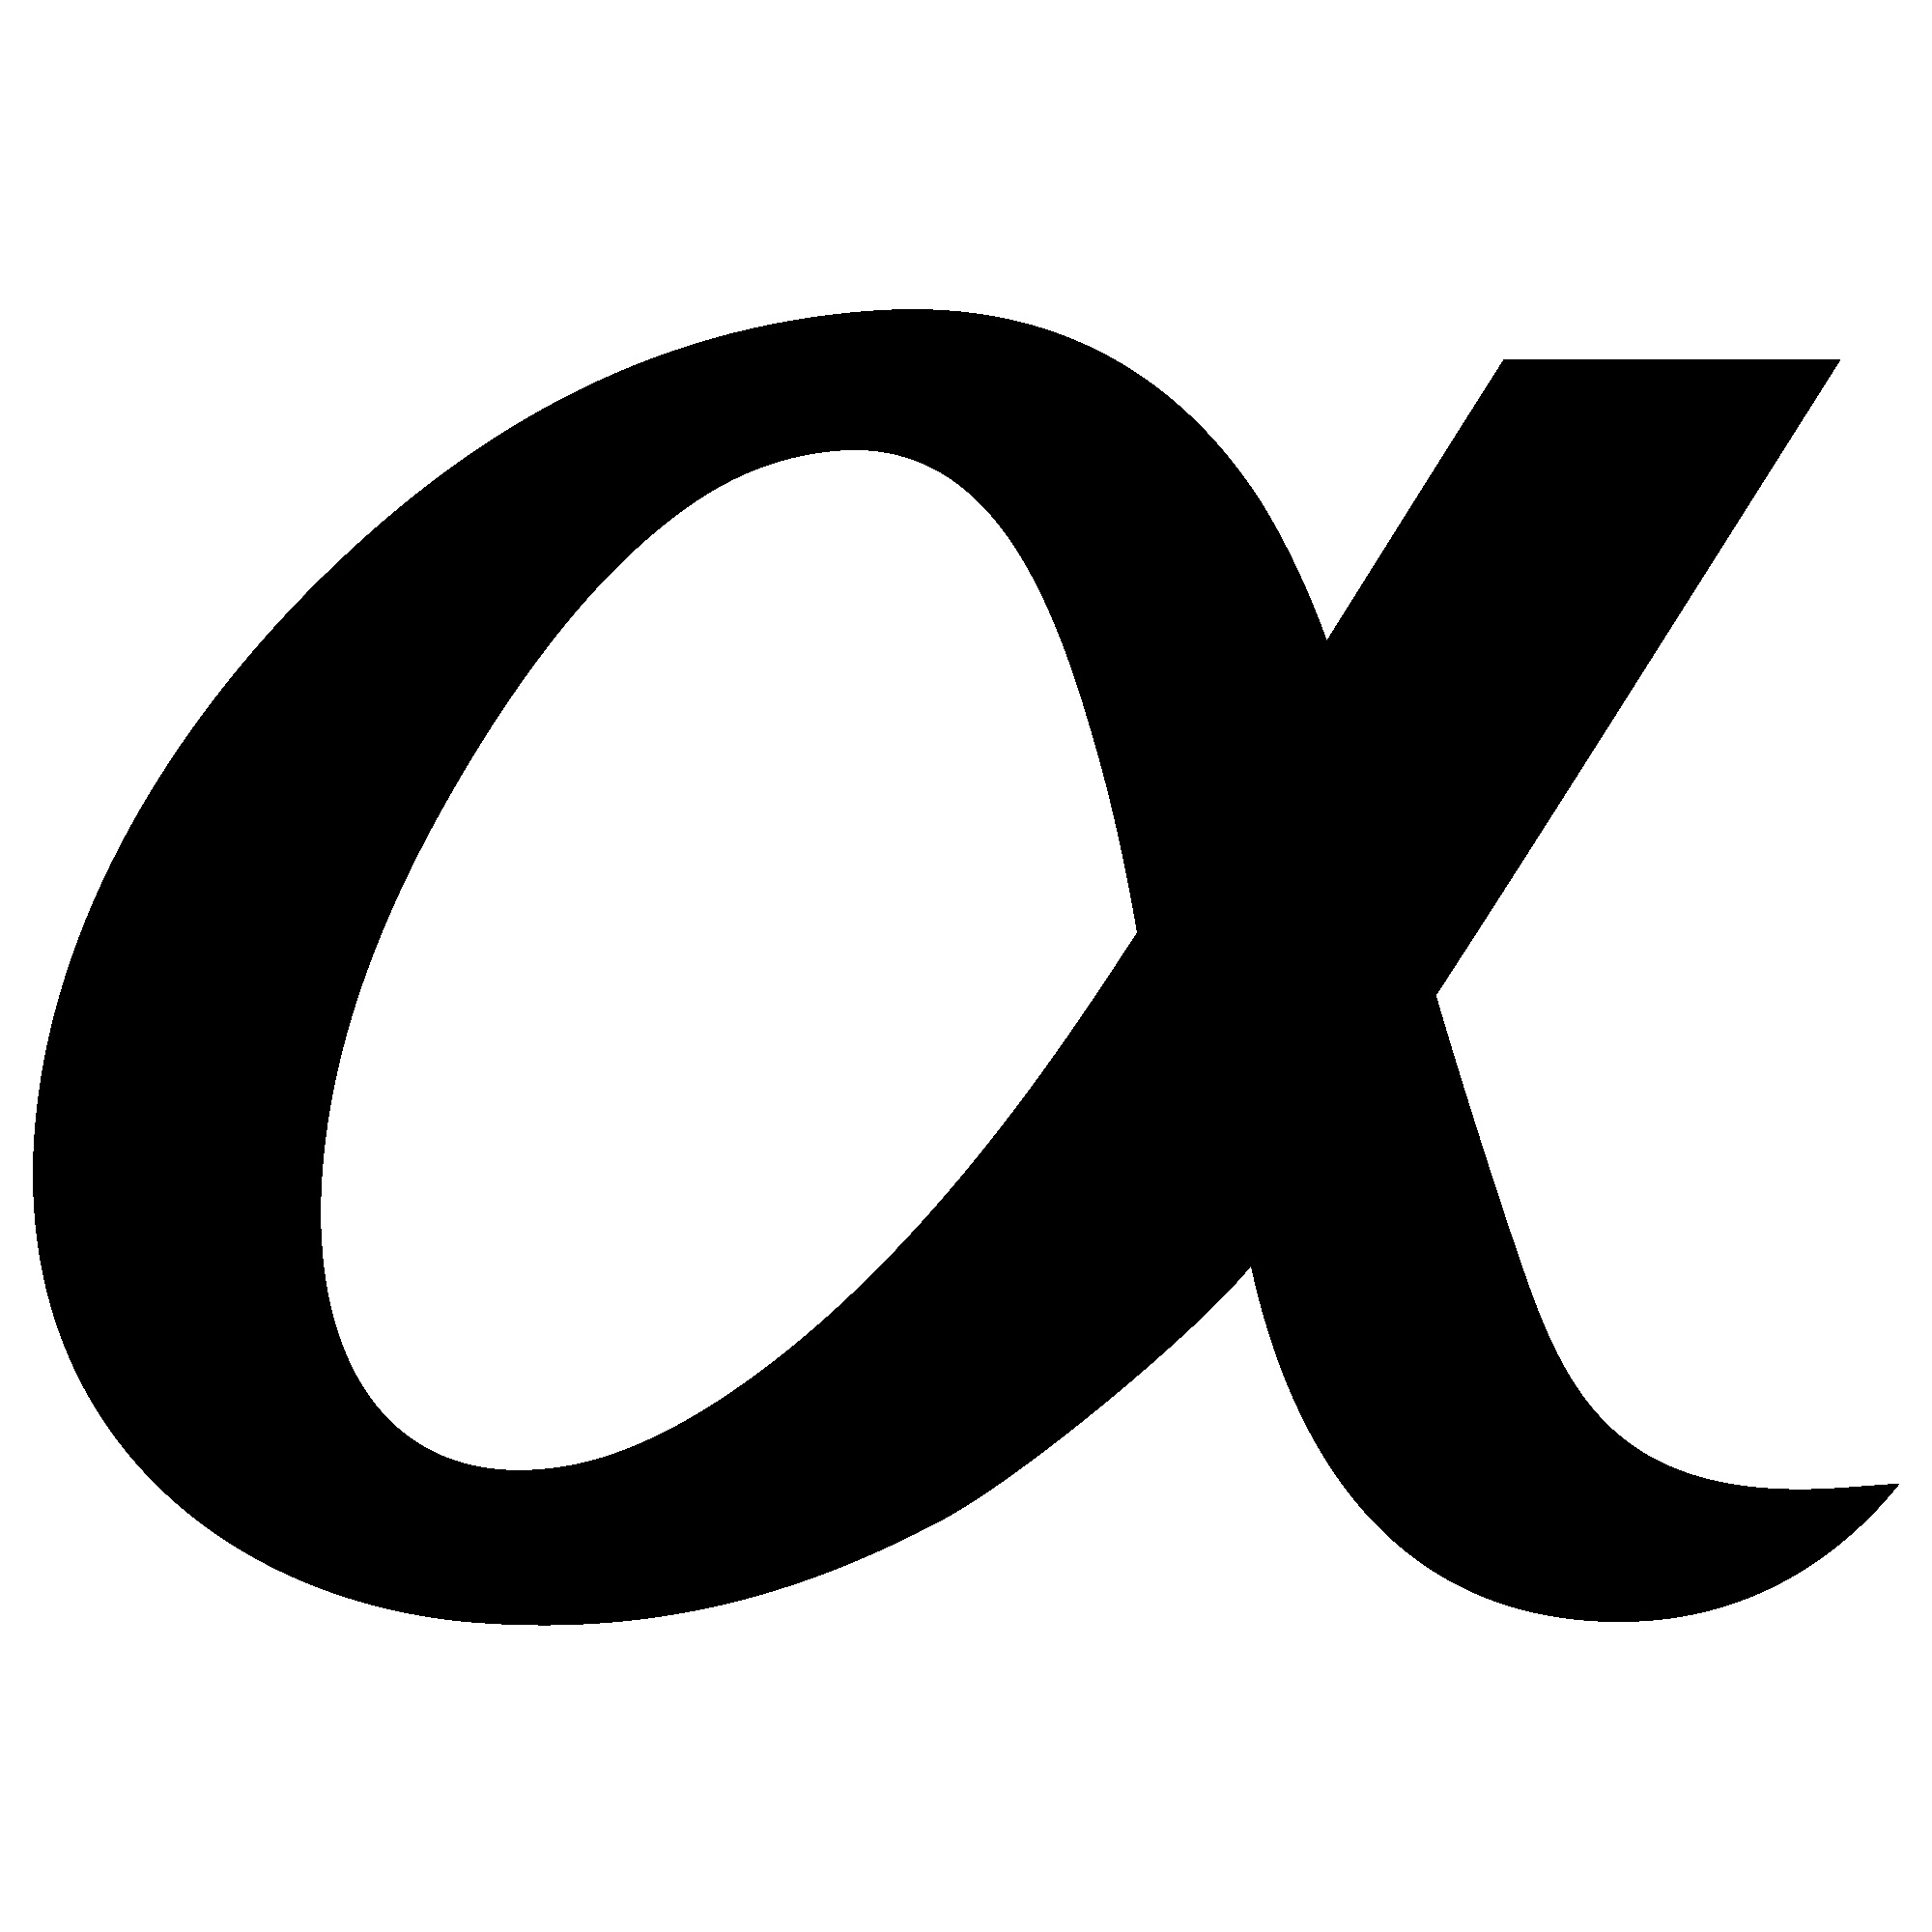 Alfa буква. Альфа символ. Альфа Греческая буква прописная. Альфа знак вектор. Альфа буква греческого алфавита.